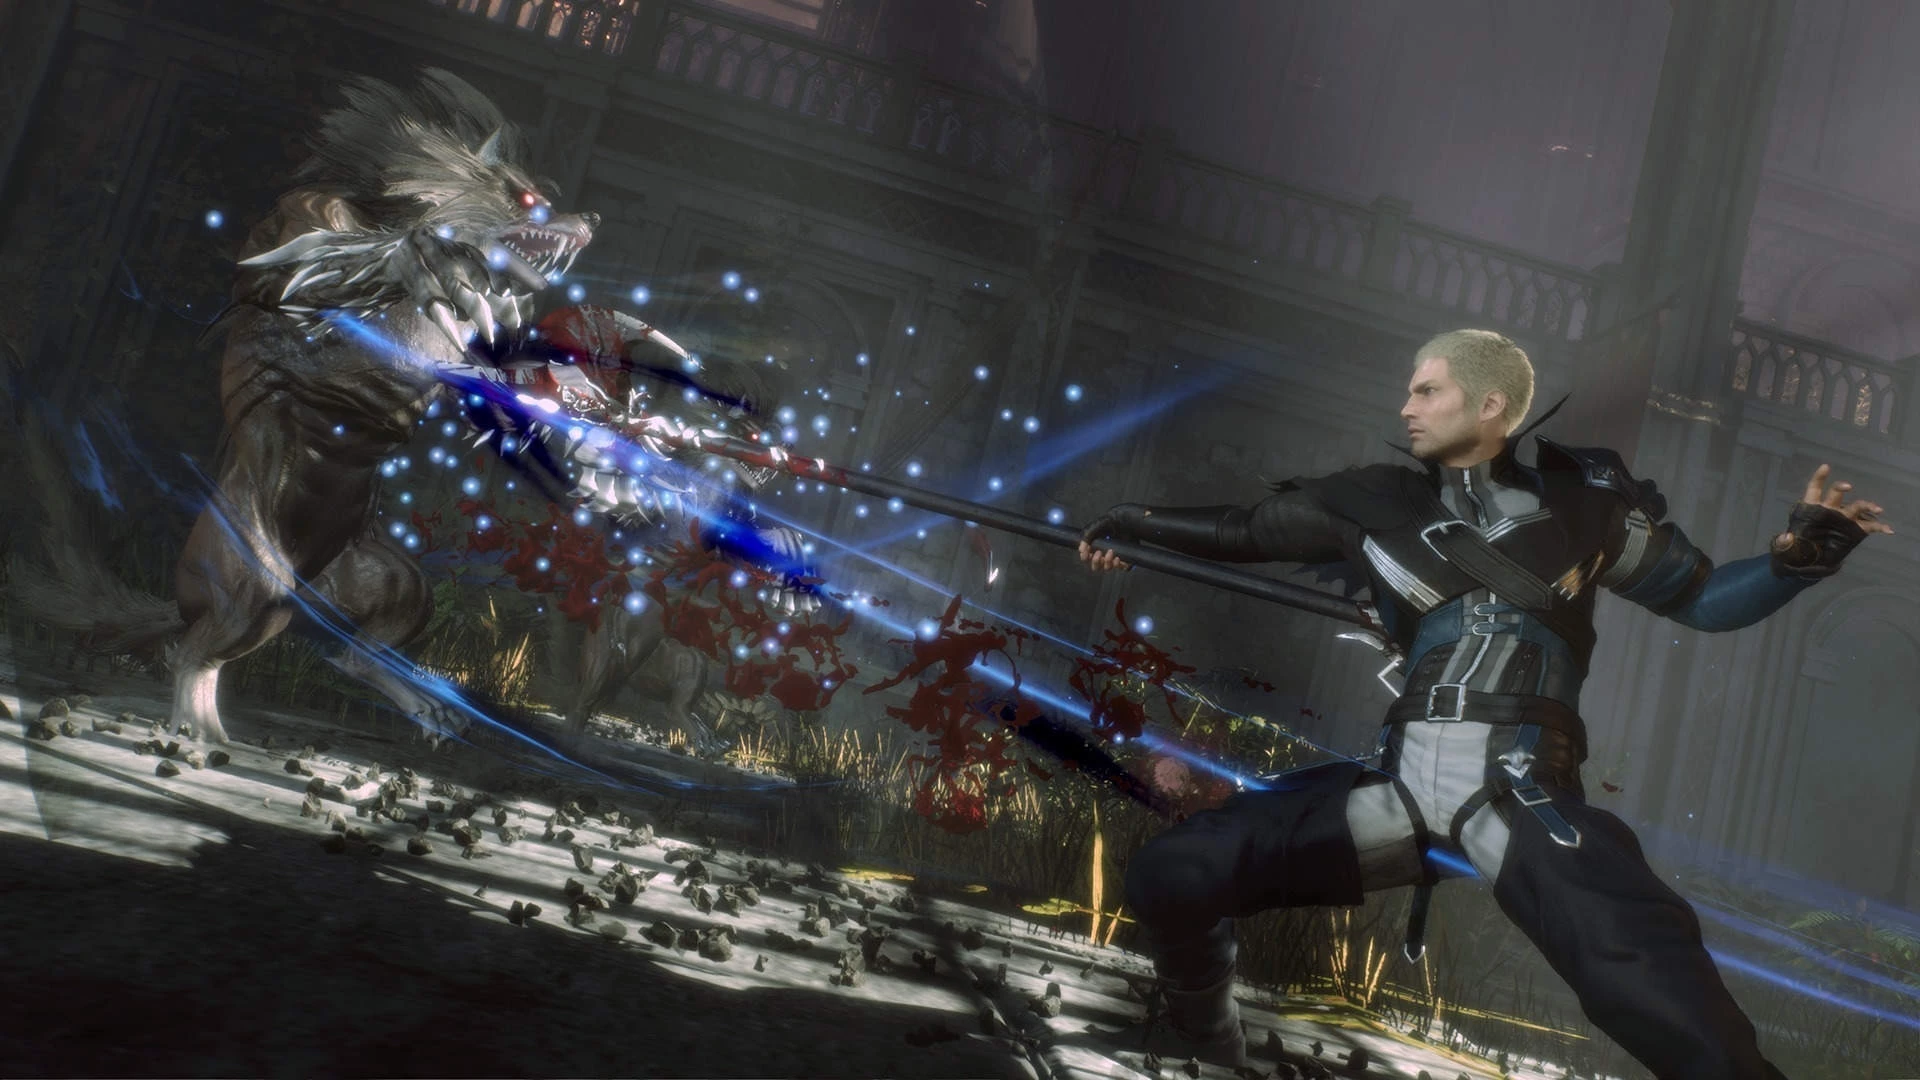 Stranger of Paradise: Final Fantasy Origin voor de Xbox One preorder plaatsen op nedgame.nl